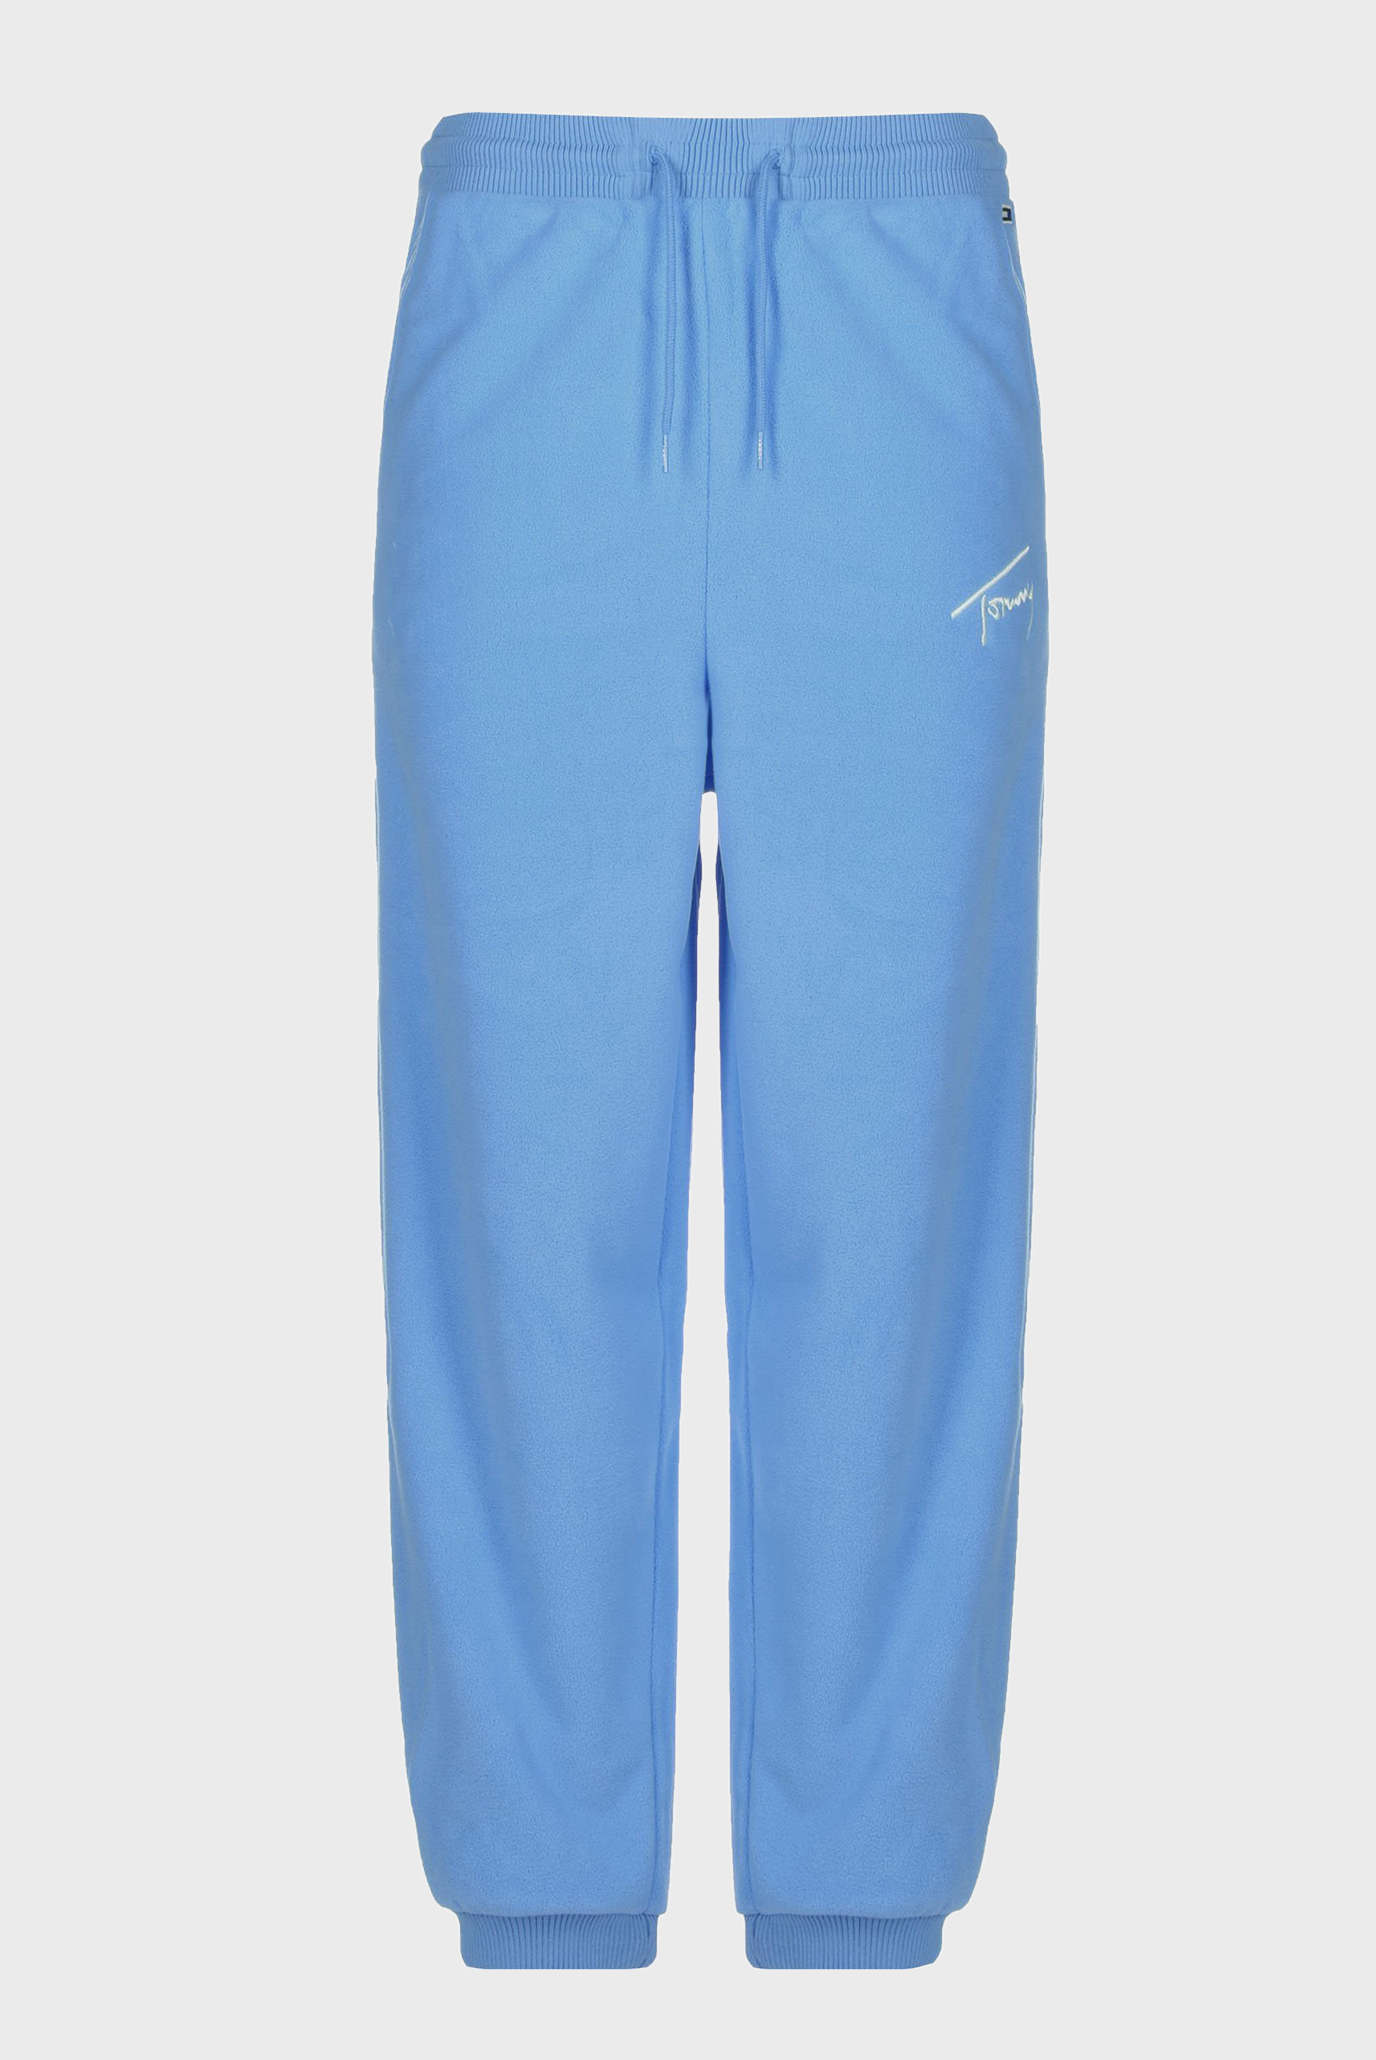 Женские голубые спортивные брюки TJW SIGNATURE FLEECE 1